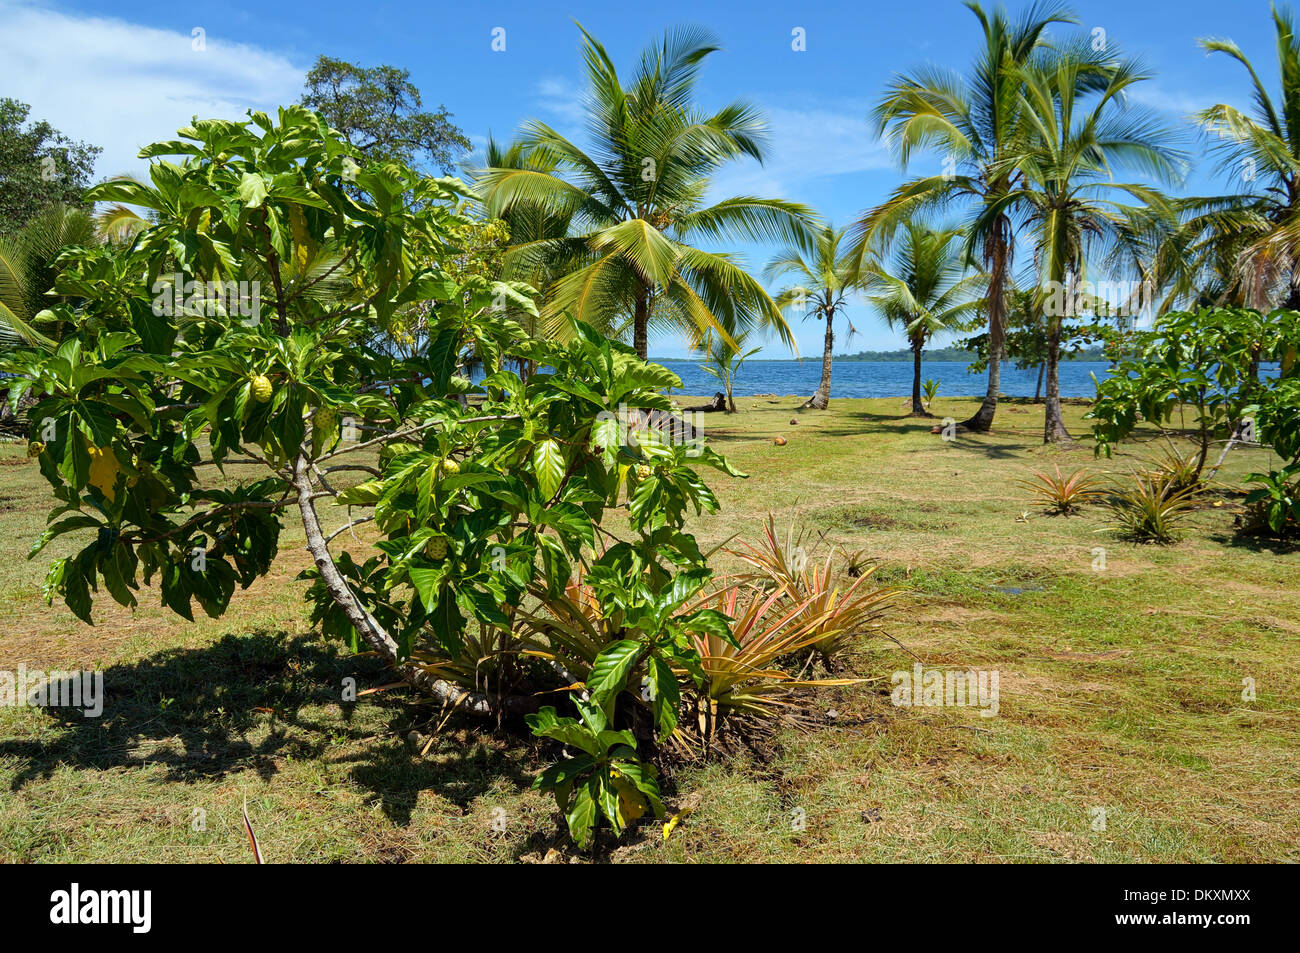 L'arbre de Noni, Morinda Citrifolia, avec une végétation tropicale et la mer des Caraïbes en arrière-plan, Panama, Amérique Centrale Banque D'Images